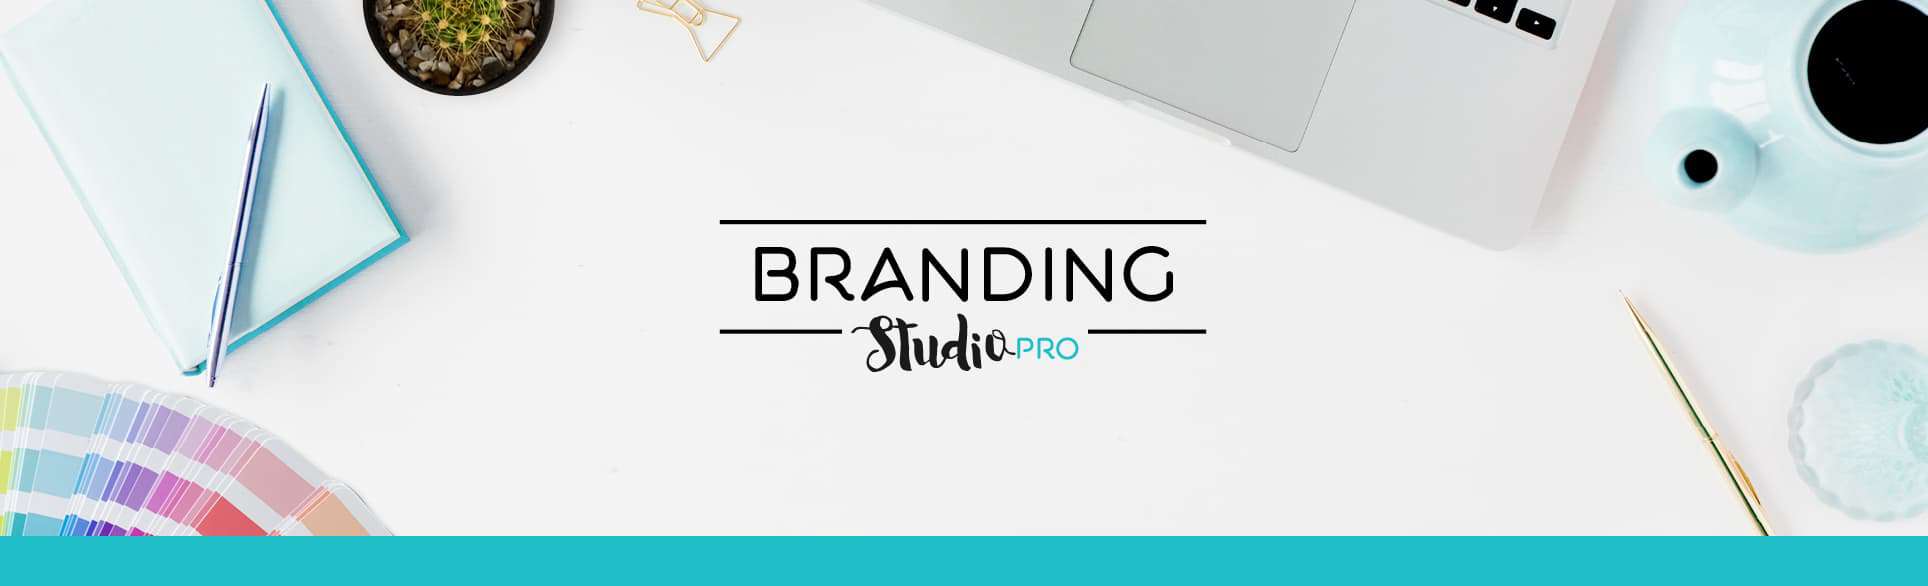 קורס התמחות במיתוג branding studio pro